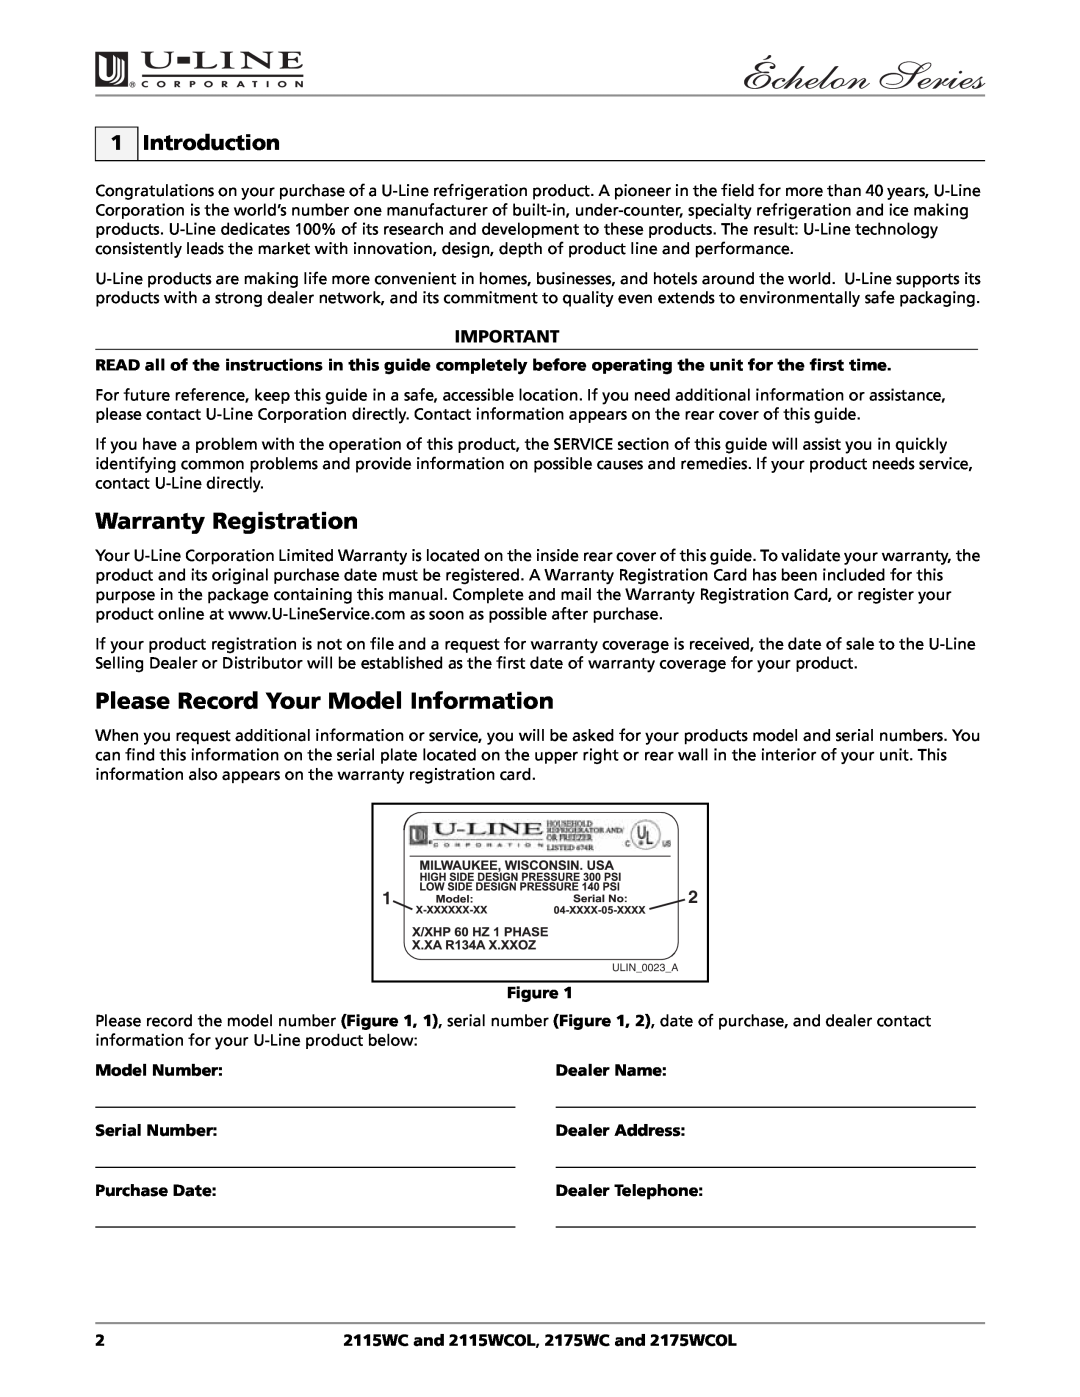 U-Line 2115WCOL manual Warranty Registration, Please Record Your Model Information, Introduction, Model Number, Dealer Name 